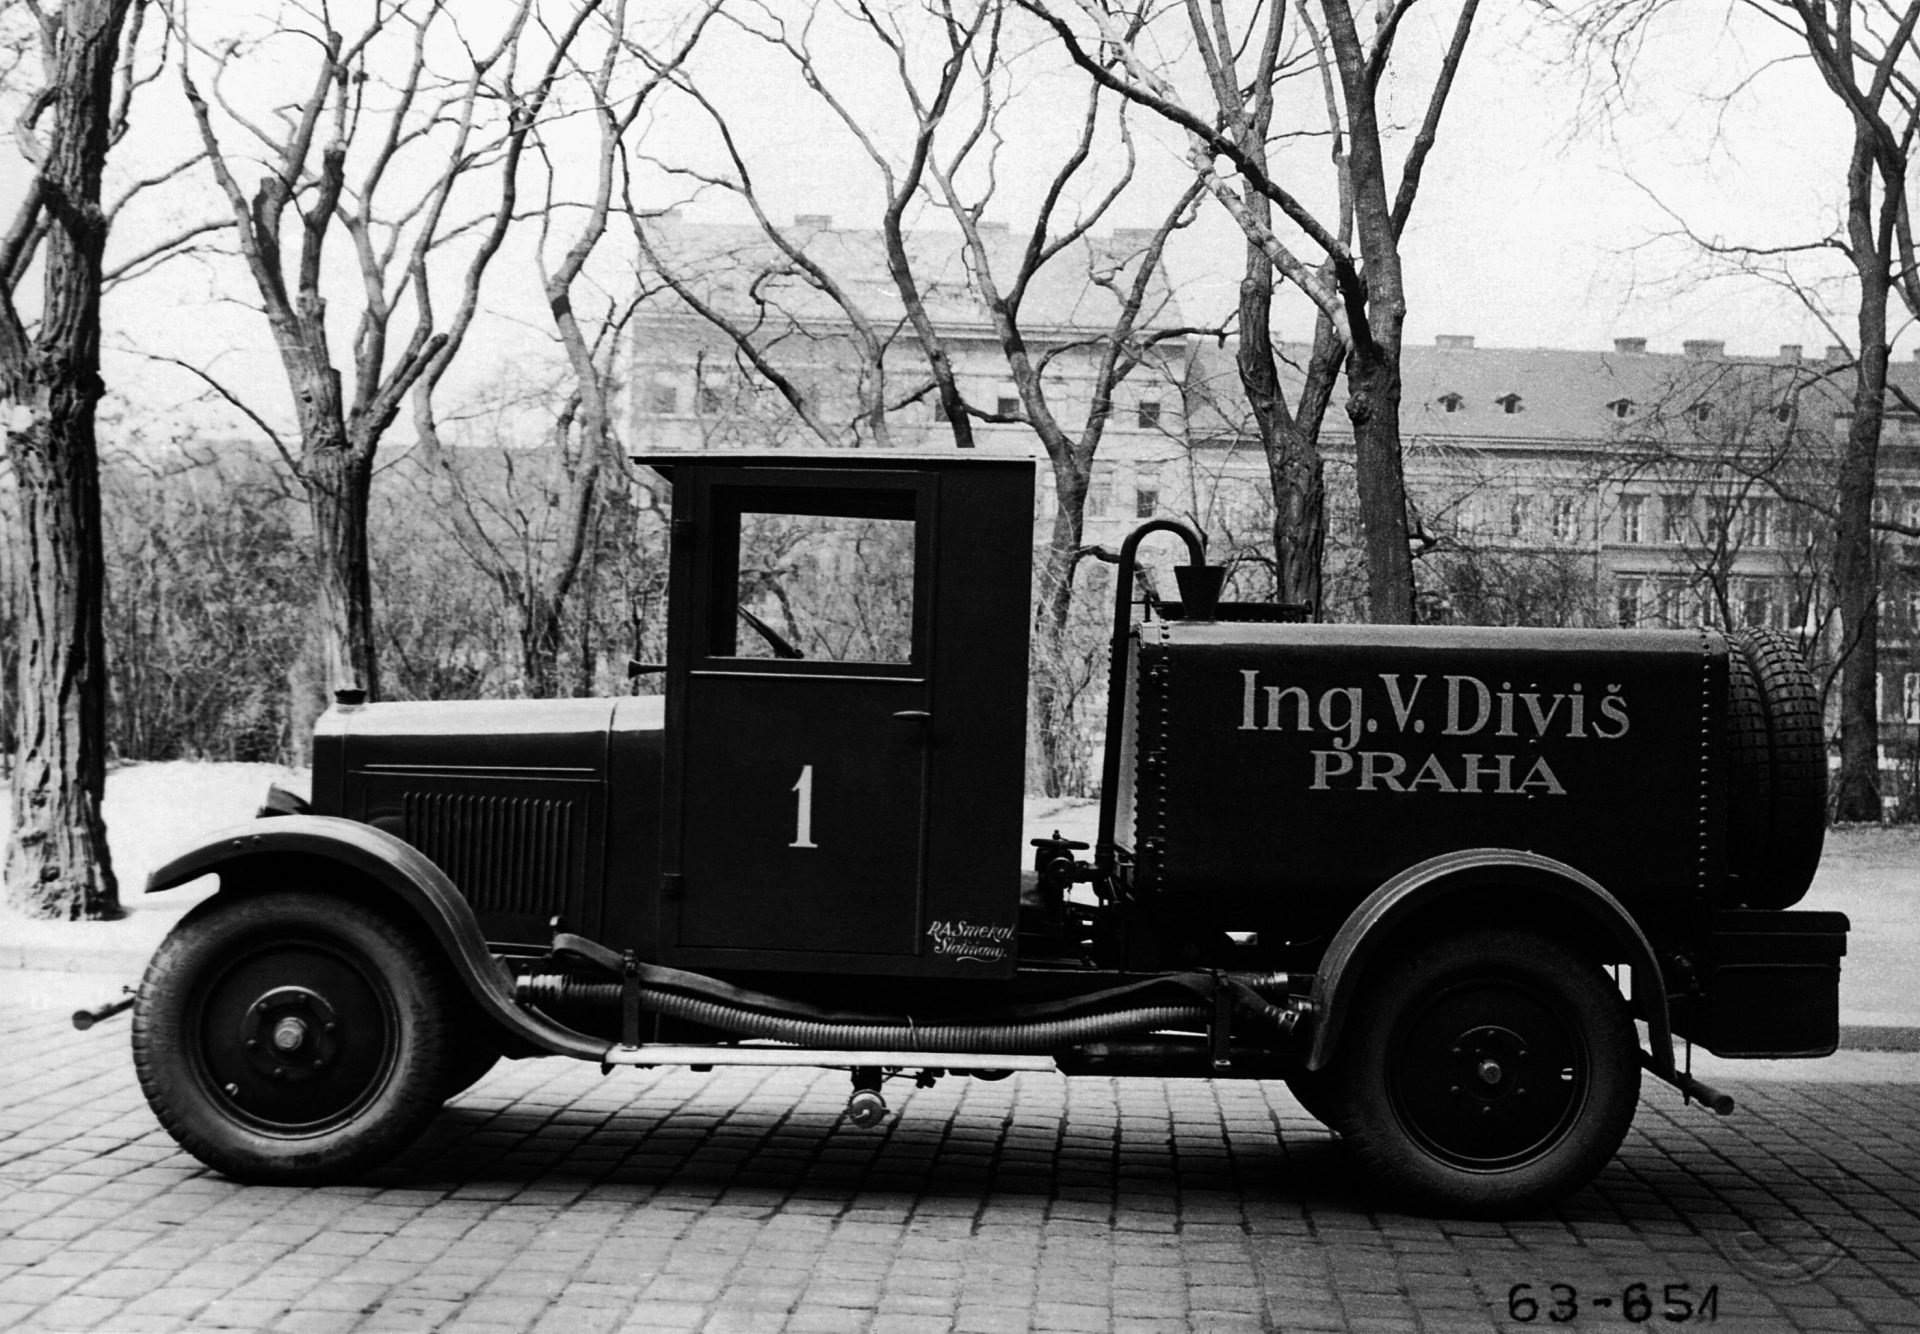 Škoda 125 užitkový automobil dodávaný jako dodávkový vůz, autobus pro deset cestujících či s dalšími speciálními nástavbami, 1927 – 1929, 1650 ks.